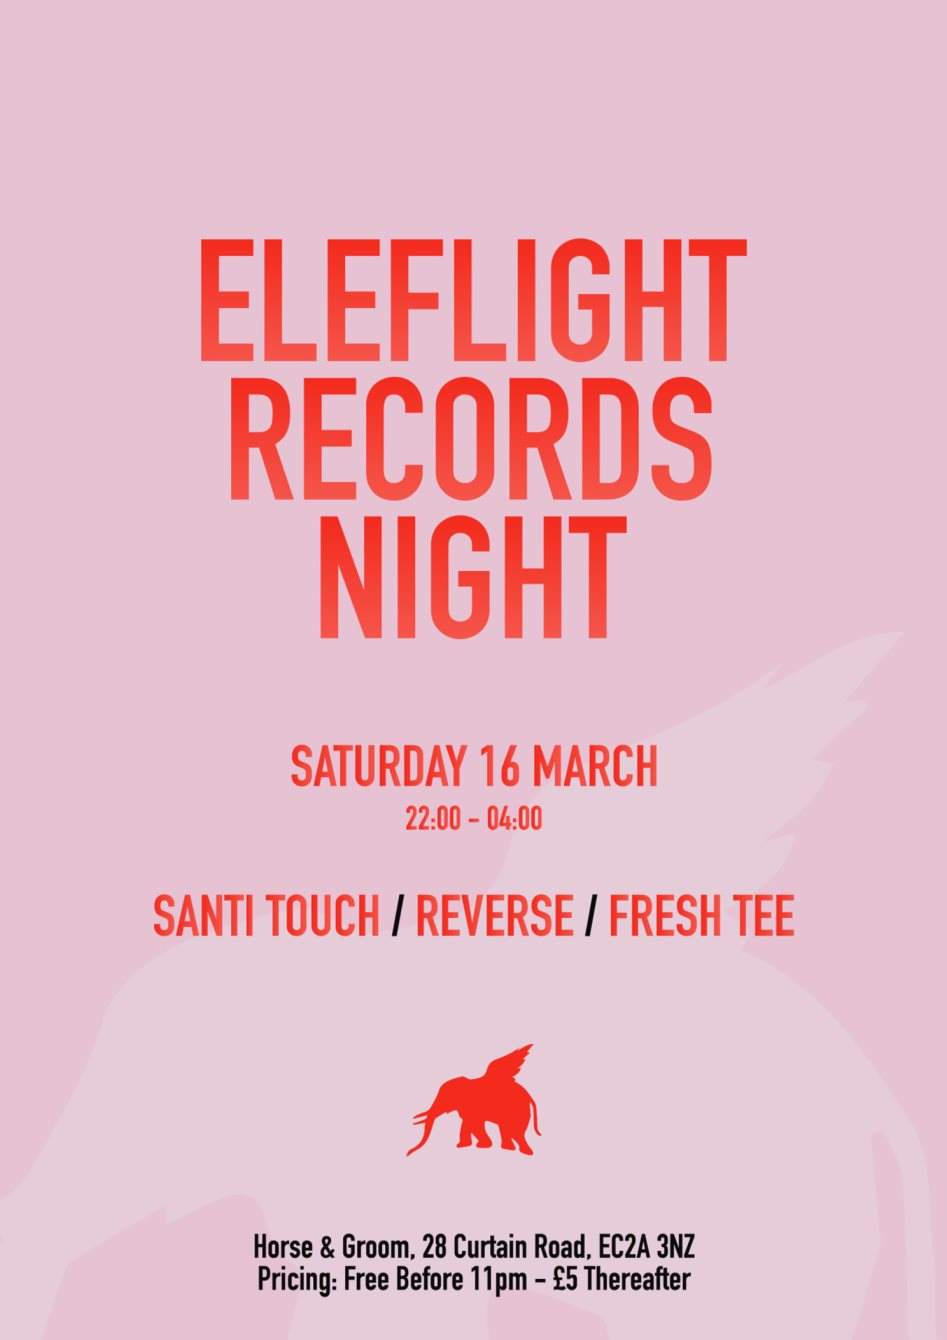 Eleflight Records Night - フライヤー表